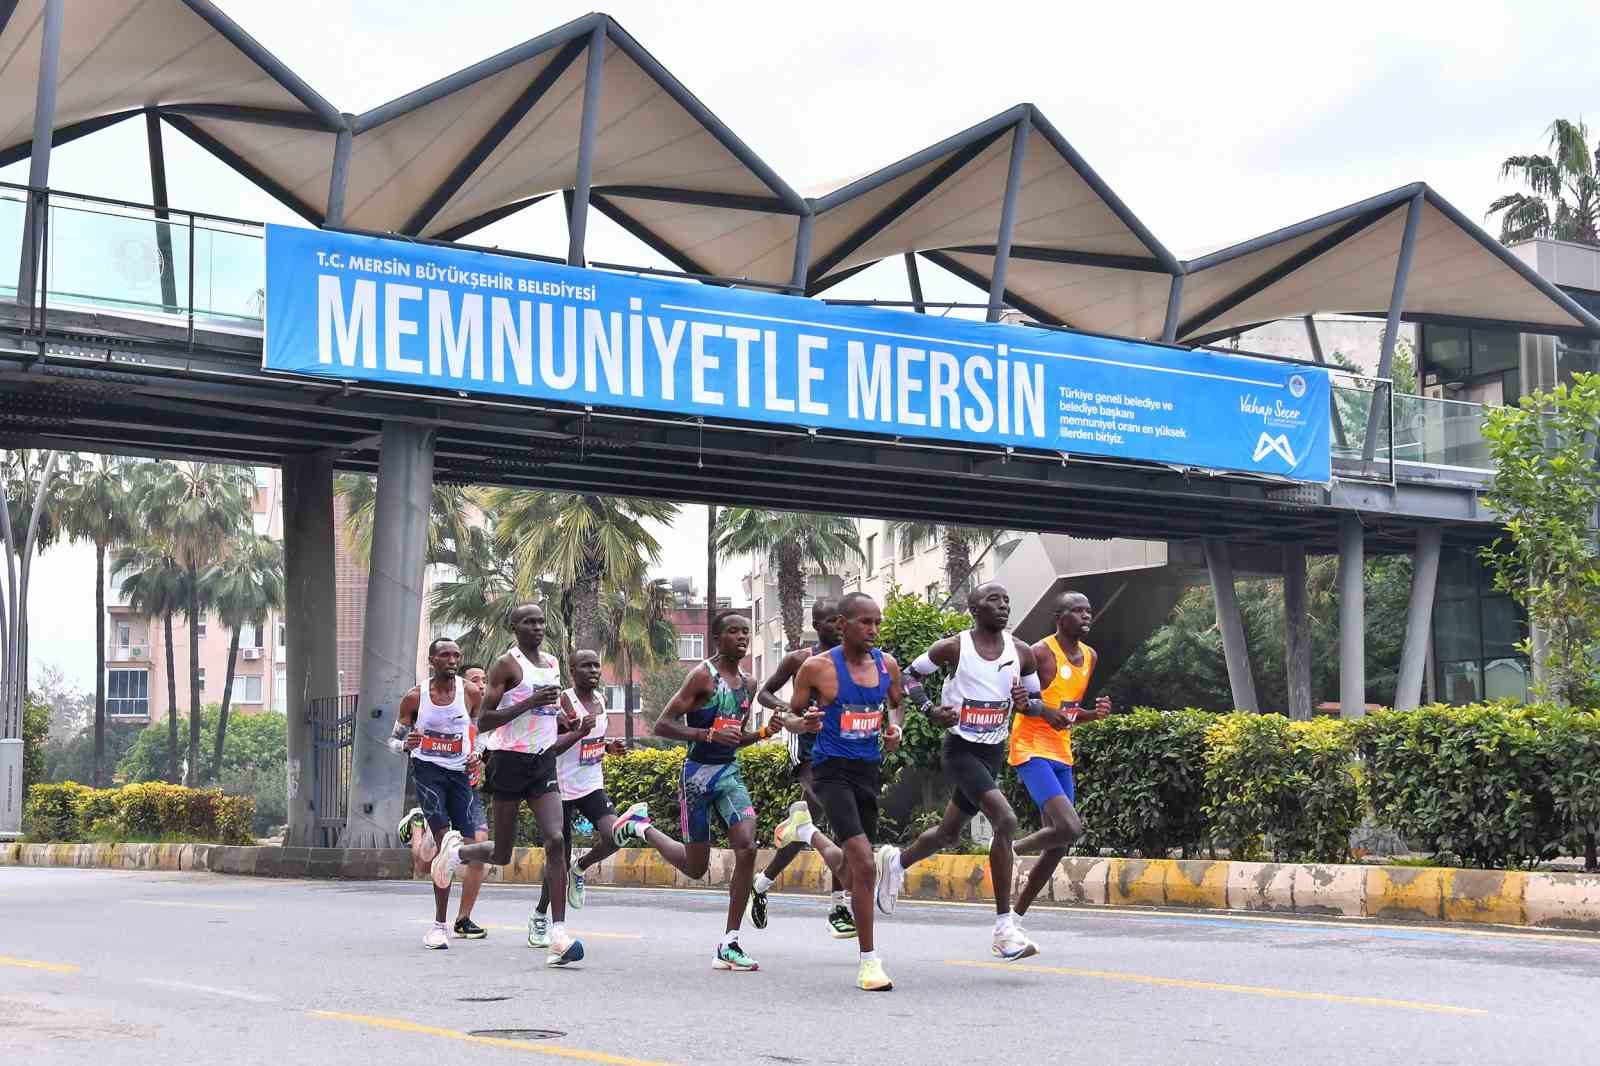 Uluslararası Mersin Maratonu, 168 maraton arasında 44’üncü oldu
